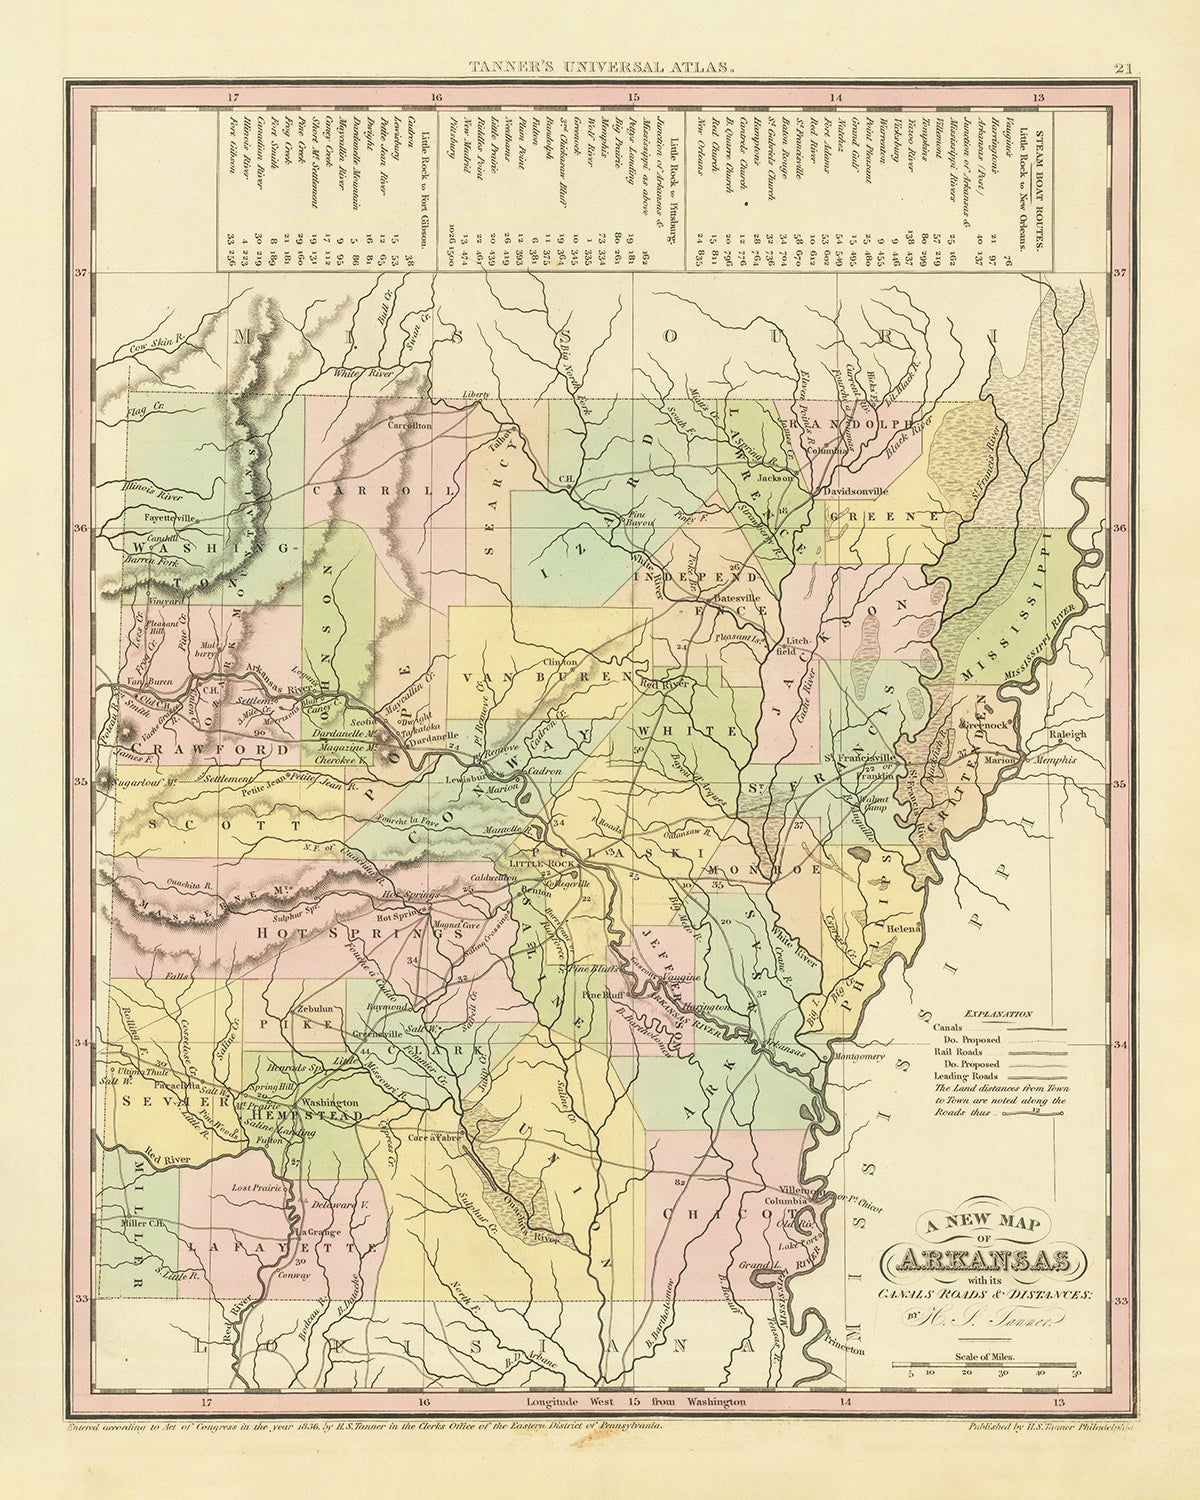 Ancienne carte de l'Arkansas par H. S. Tanner, 1836 : Little Rock, Fort Smith, Pine Bluff, Batesville, Washington, routes, chemins de fer, canaux